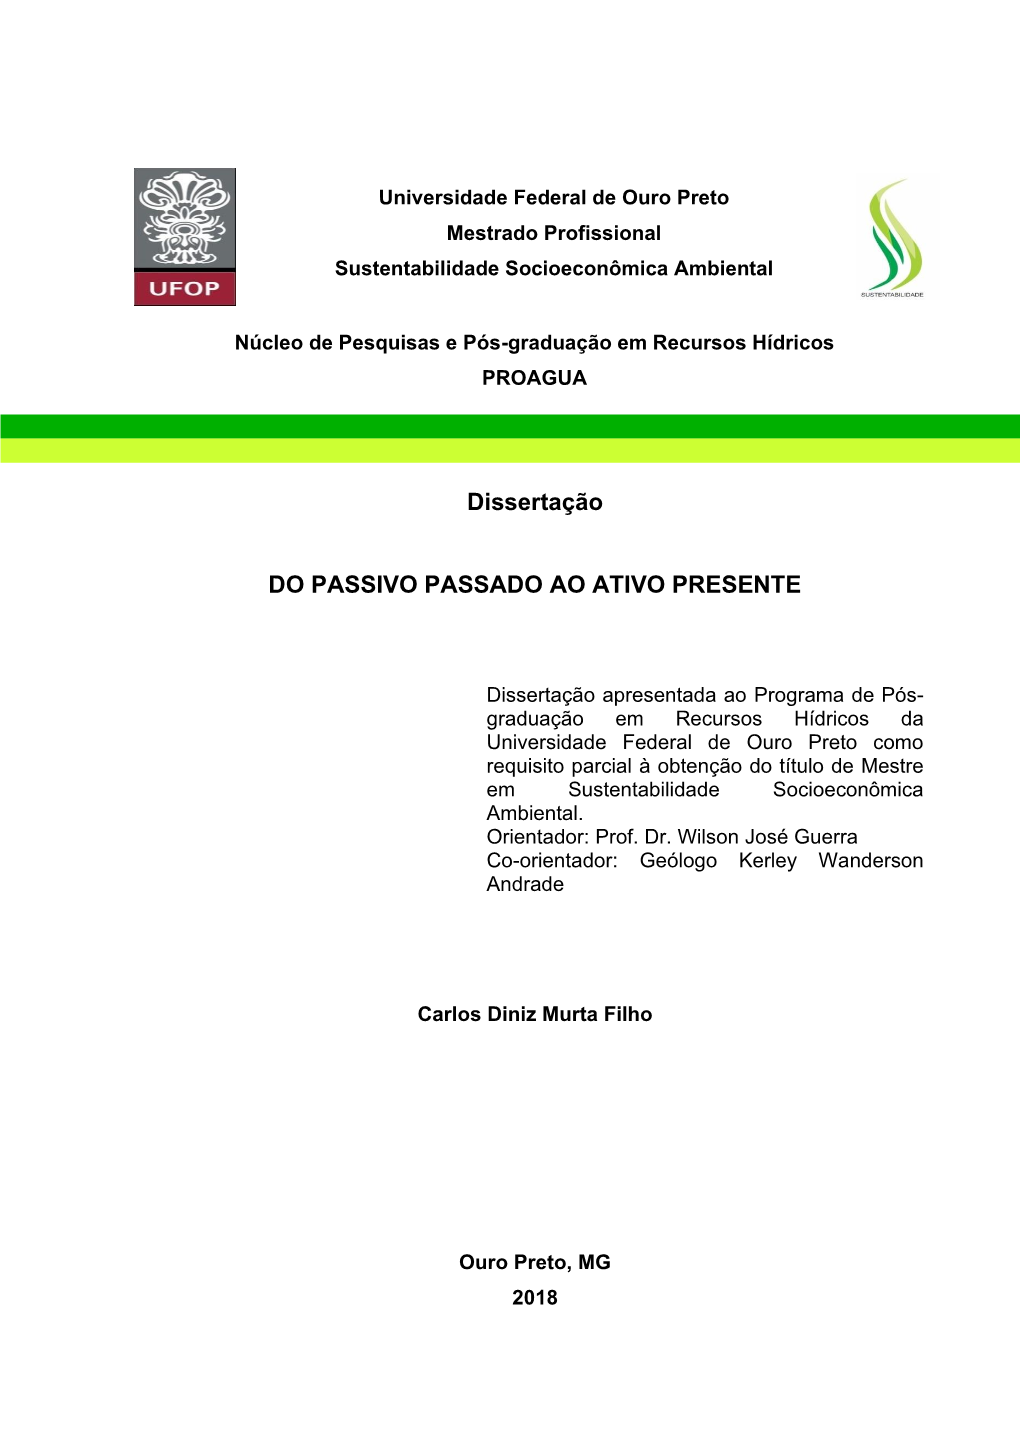 Dissertação DO PASSIVO PASSADO AO ATIVO PRESENTE